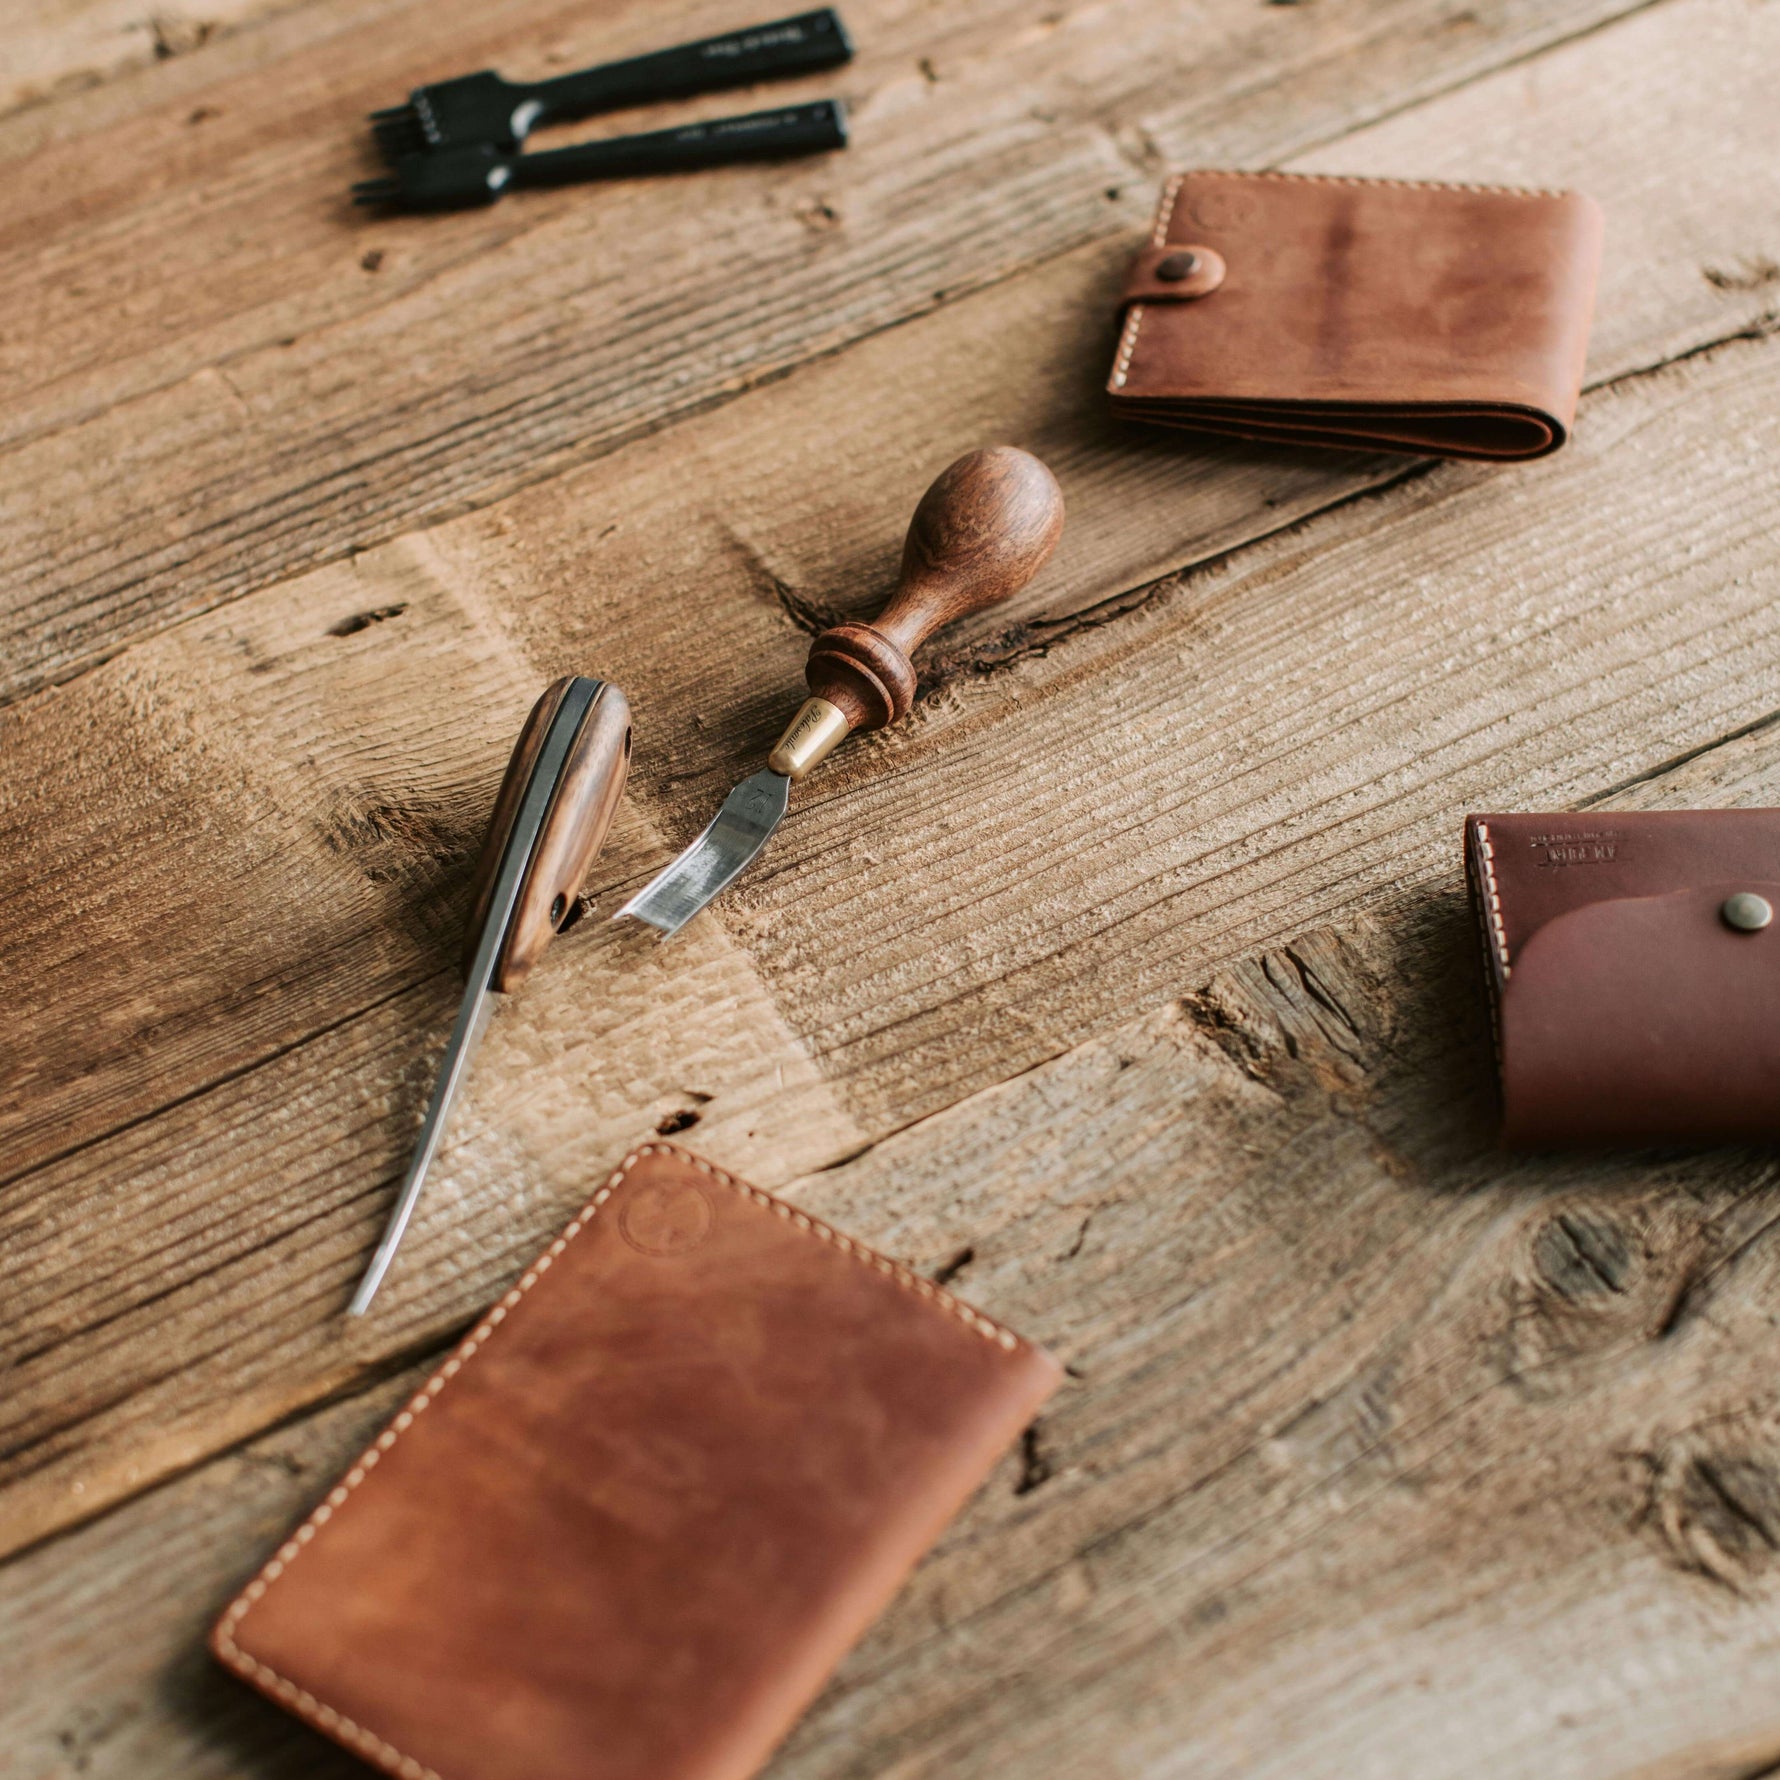 15 Preguntas sobre que herramientas básicas que debes utilizar para empezar a trabajar el cuero